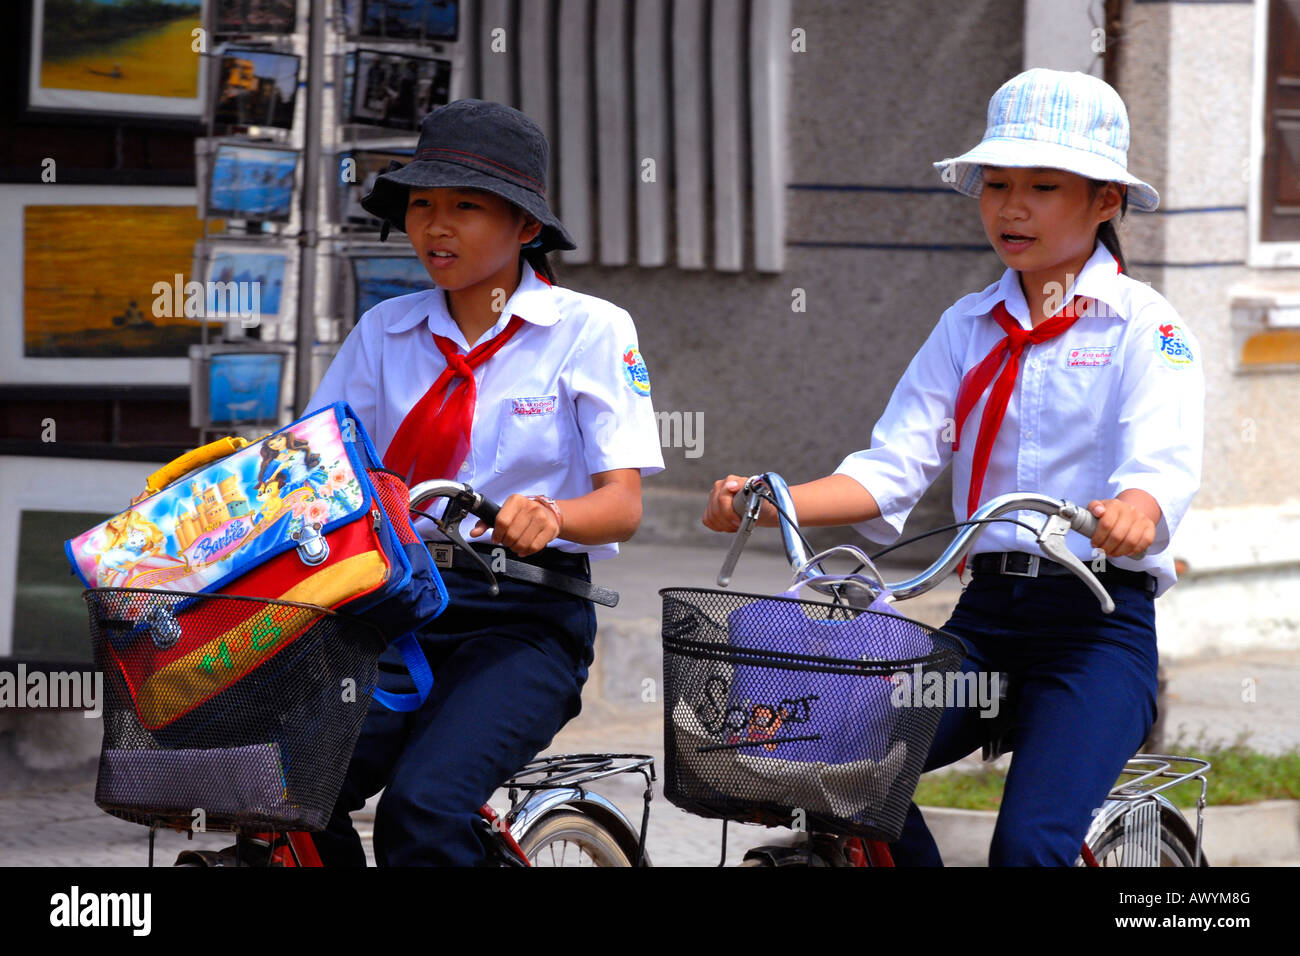 Asien Fernost Vietnam, Hoi an Markt, zwei hübsche junge Mädchen auf Fahrrädern in typischen kommunistischen Schuluniform & Floppy Hüte Stockfoto